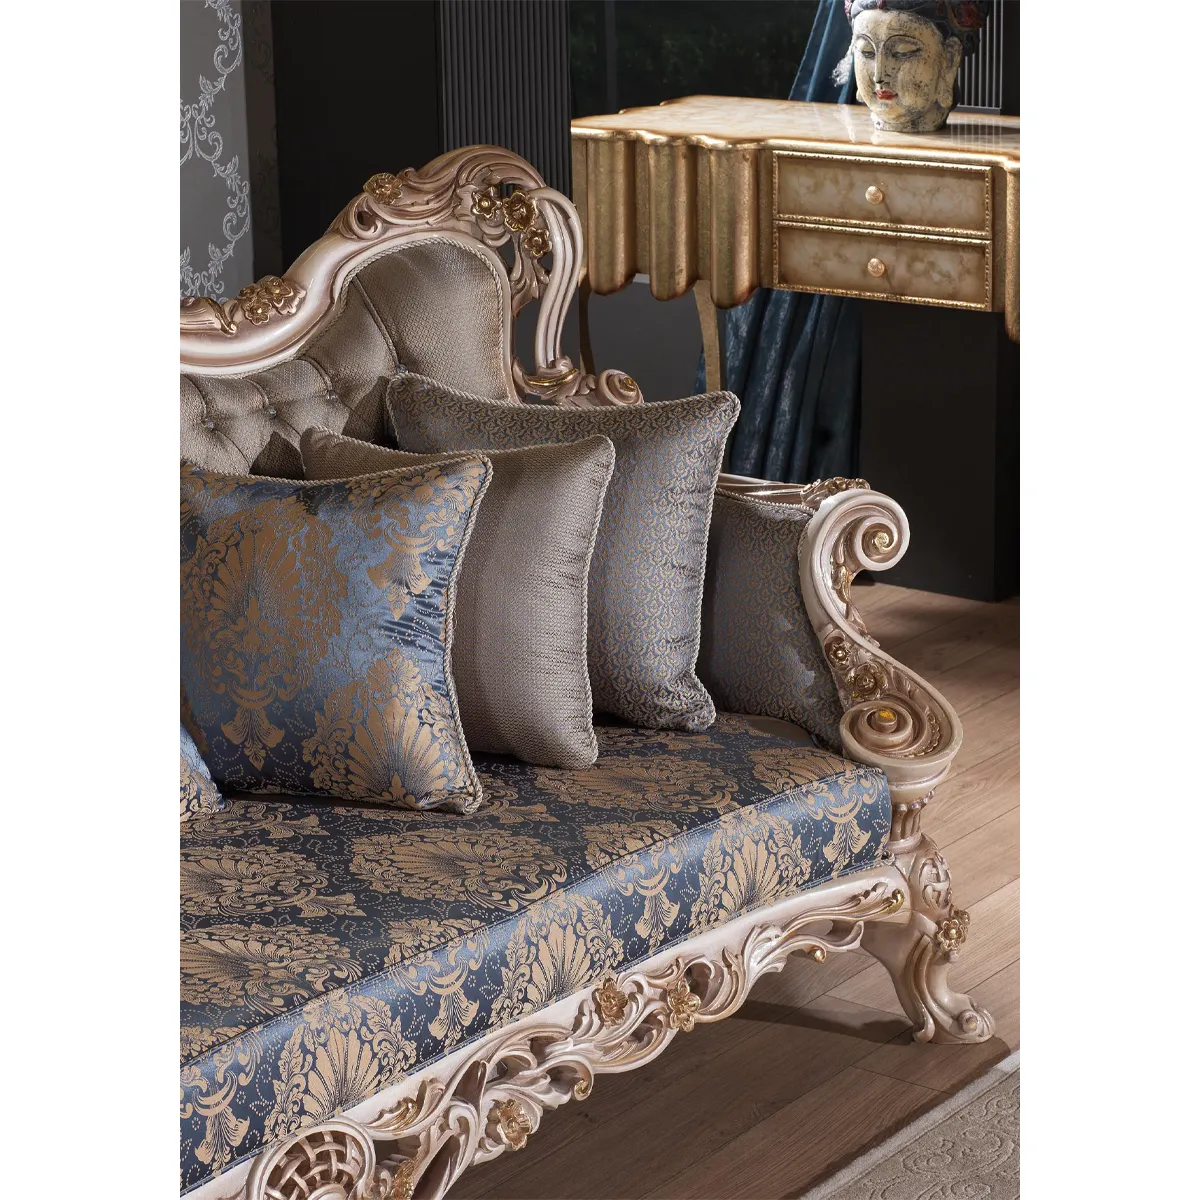 Antika kanepe kraliyet mobilya lüks kraliyet furnitureTurkish tarzı Chesterfield tasarım kraliyet özel tasarım Premium kalite